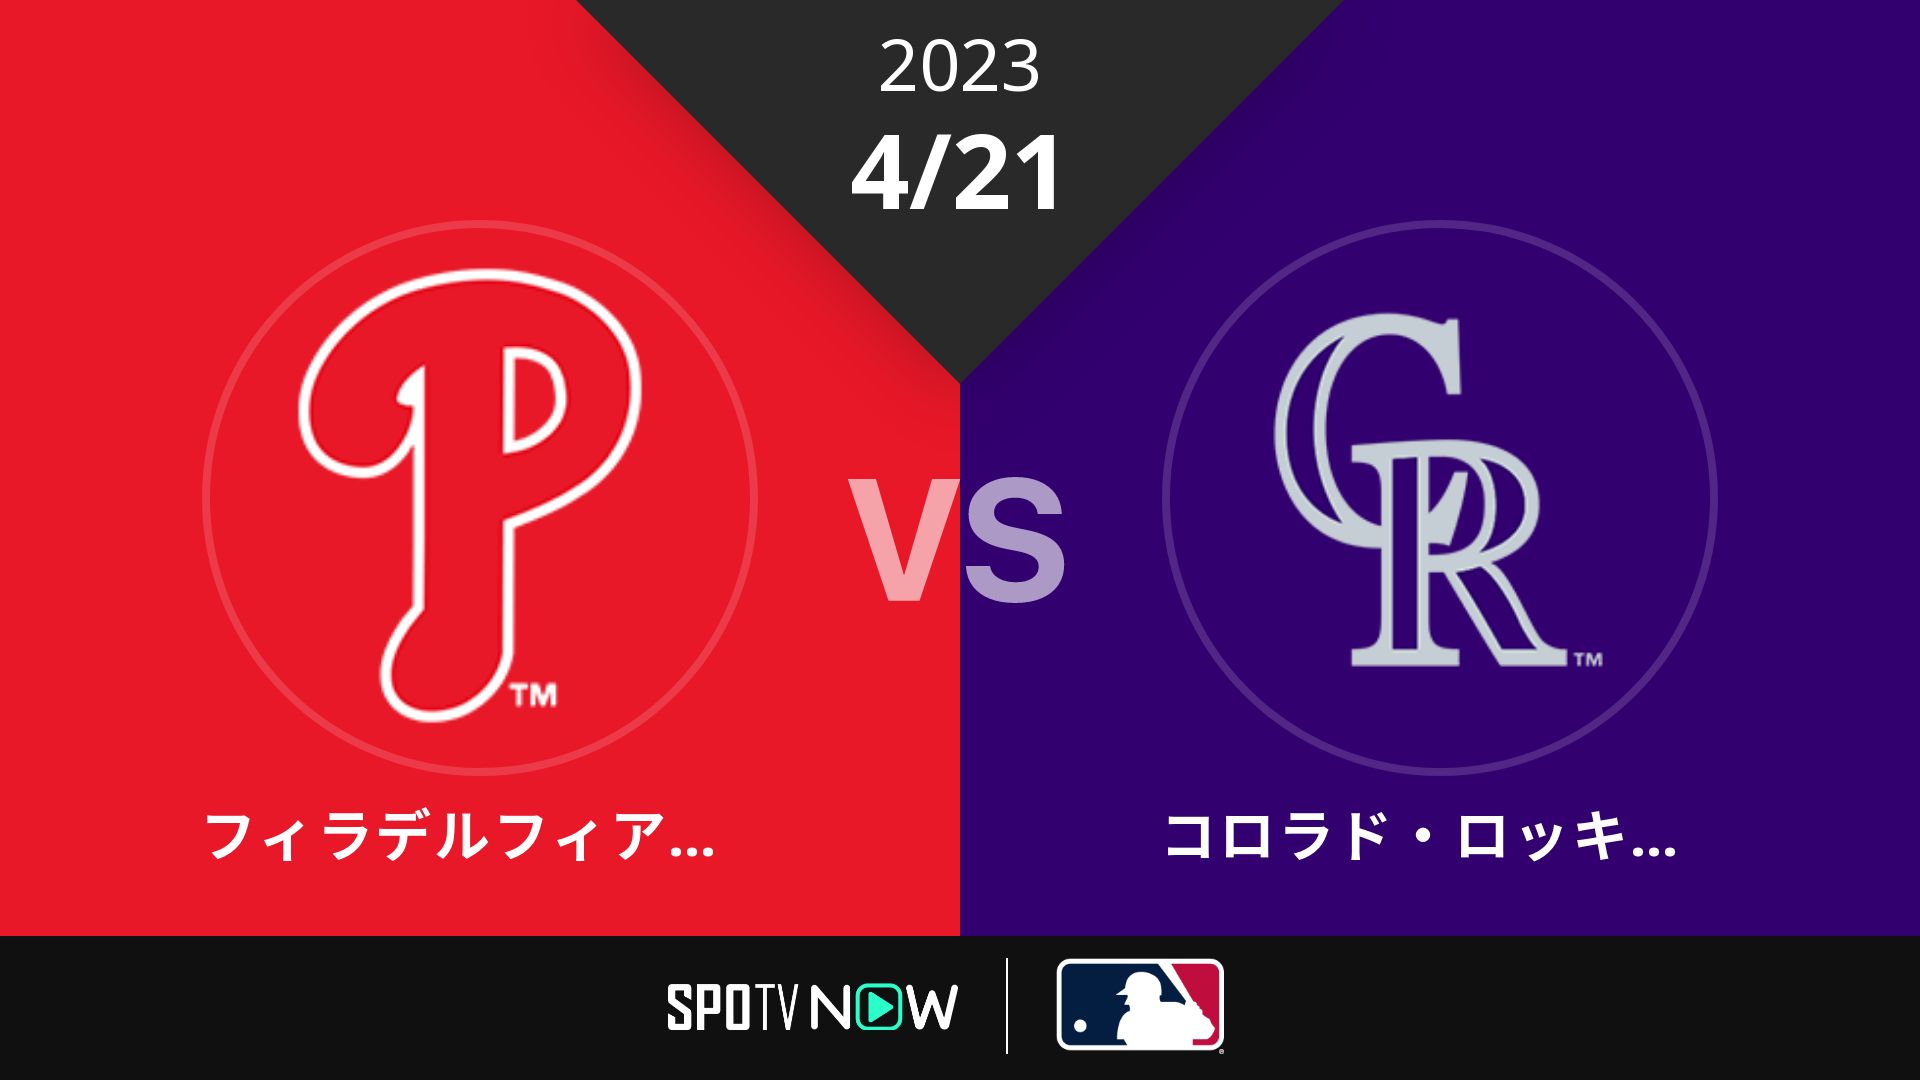 2023/4/21 フィリーズ vs ロッキーズ [MLB]